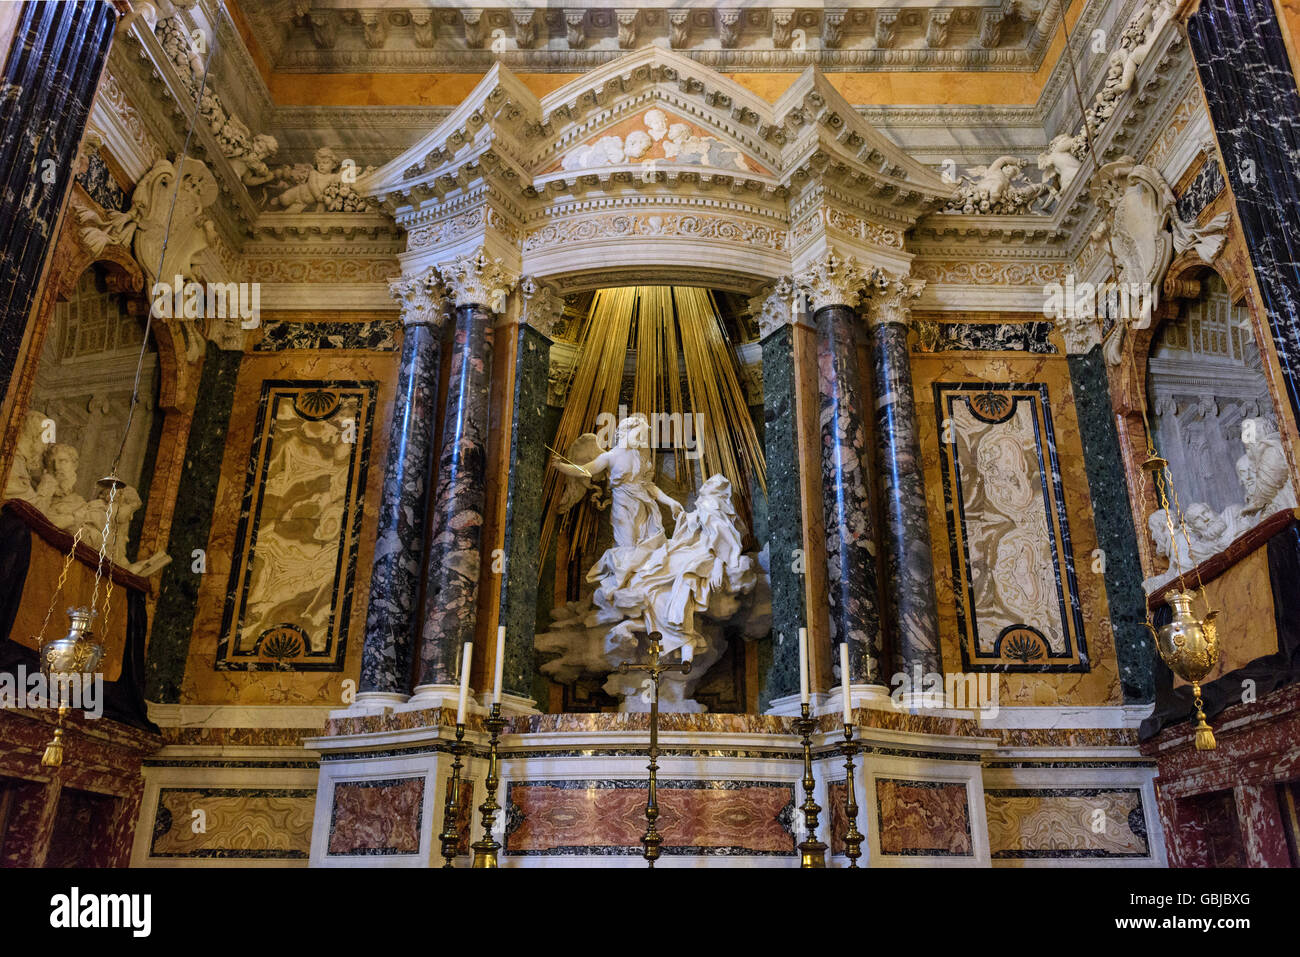 Rome. Italy. Bernini's sculpture of The Ecstasy of St Teresa (1647-1652), in the Cornaro Chapel, Santa Maria della Vittoria. Stock Photo